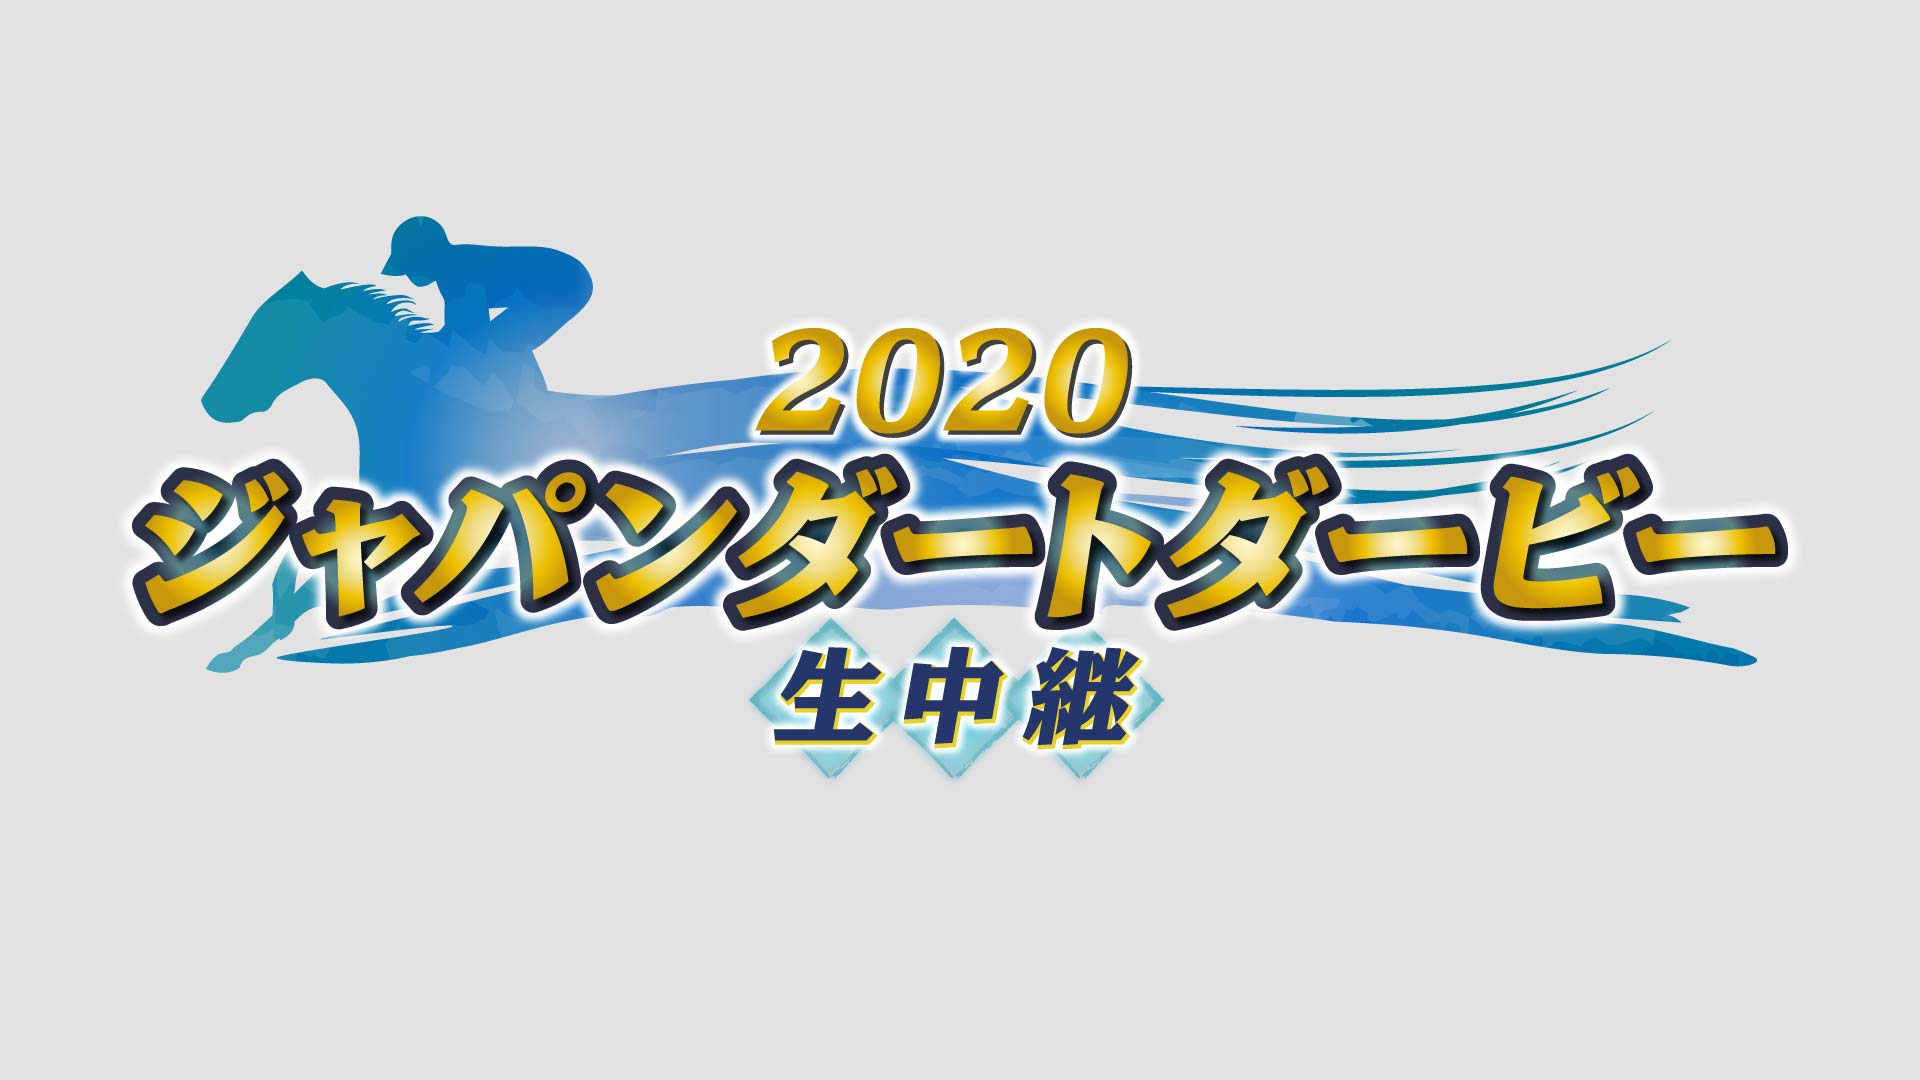 2020 ジャパンダートダービー 生中継